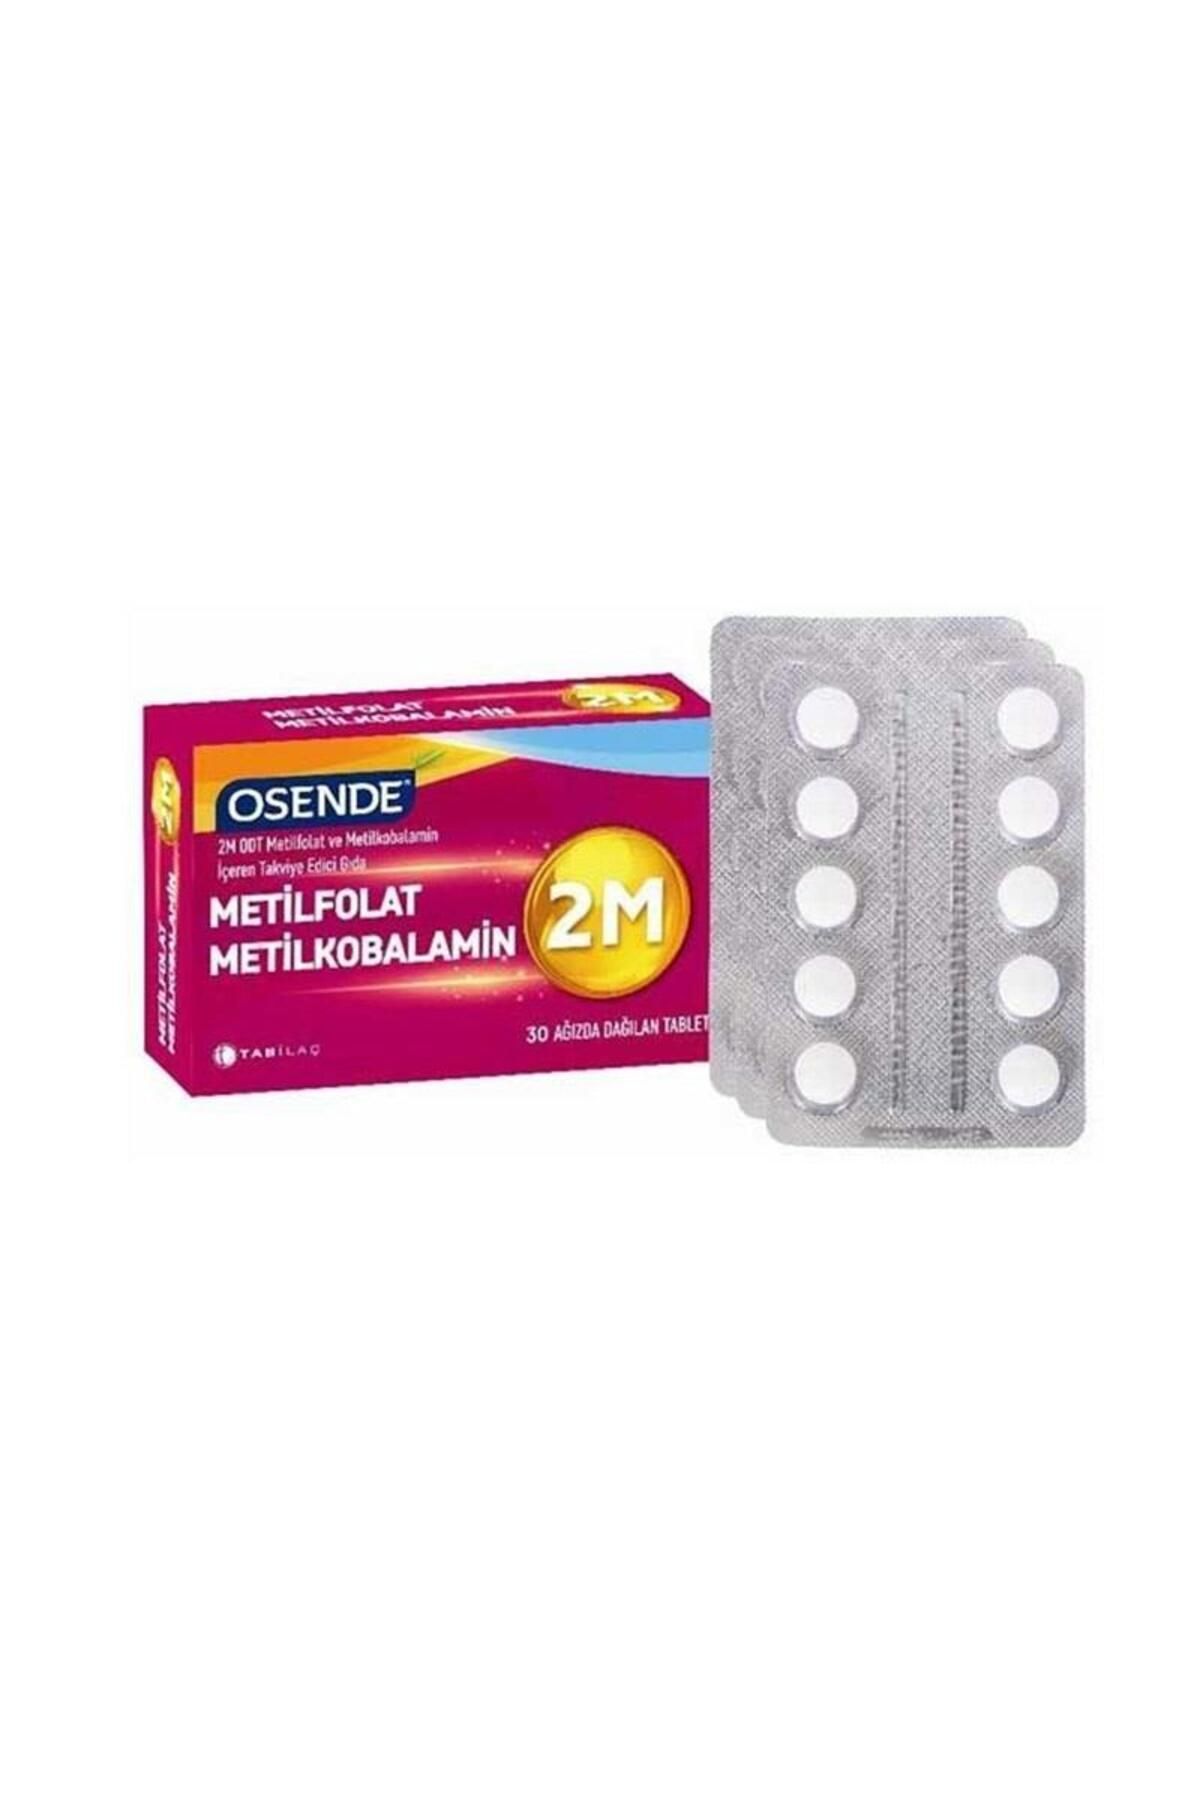 Osende 2m Metilkobalamin Metilfolat 30 Tablet Odt